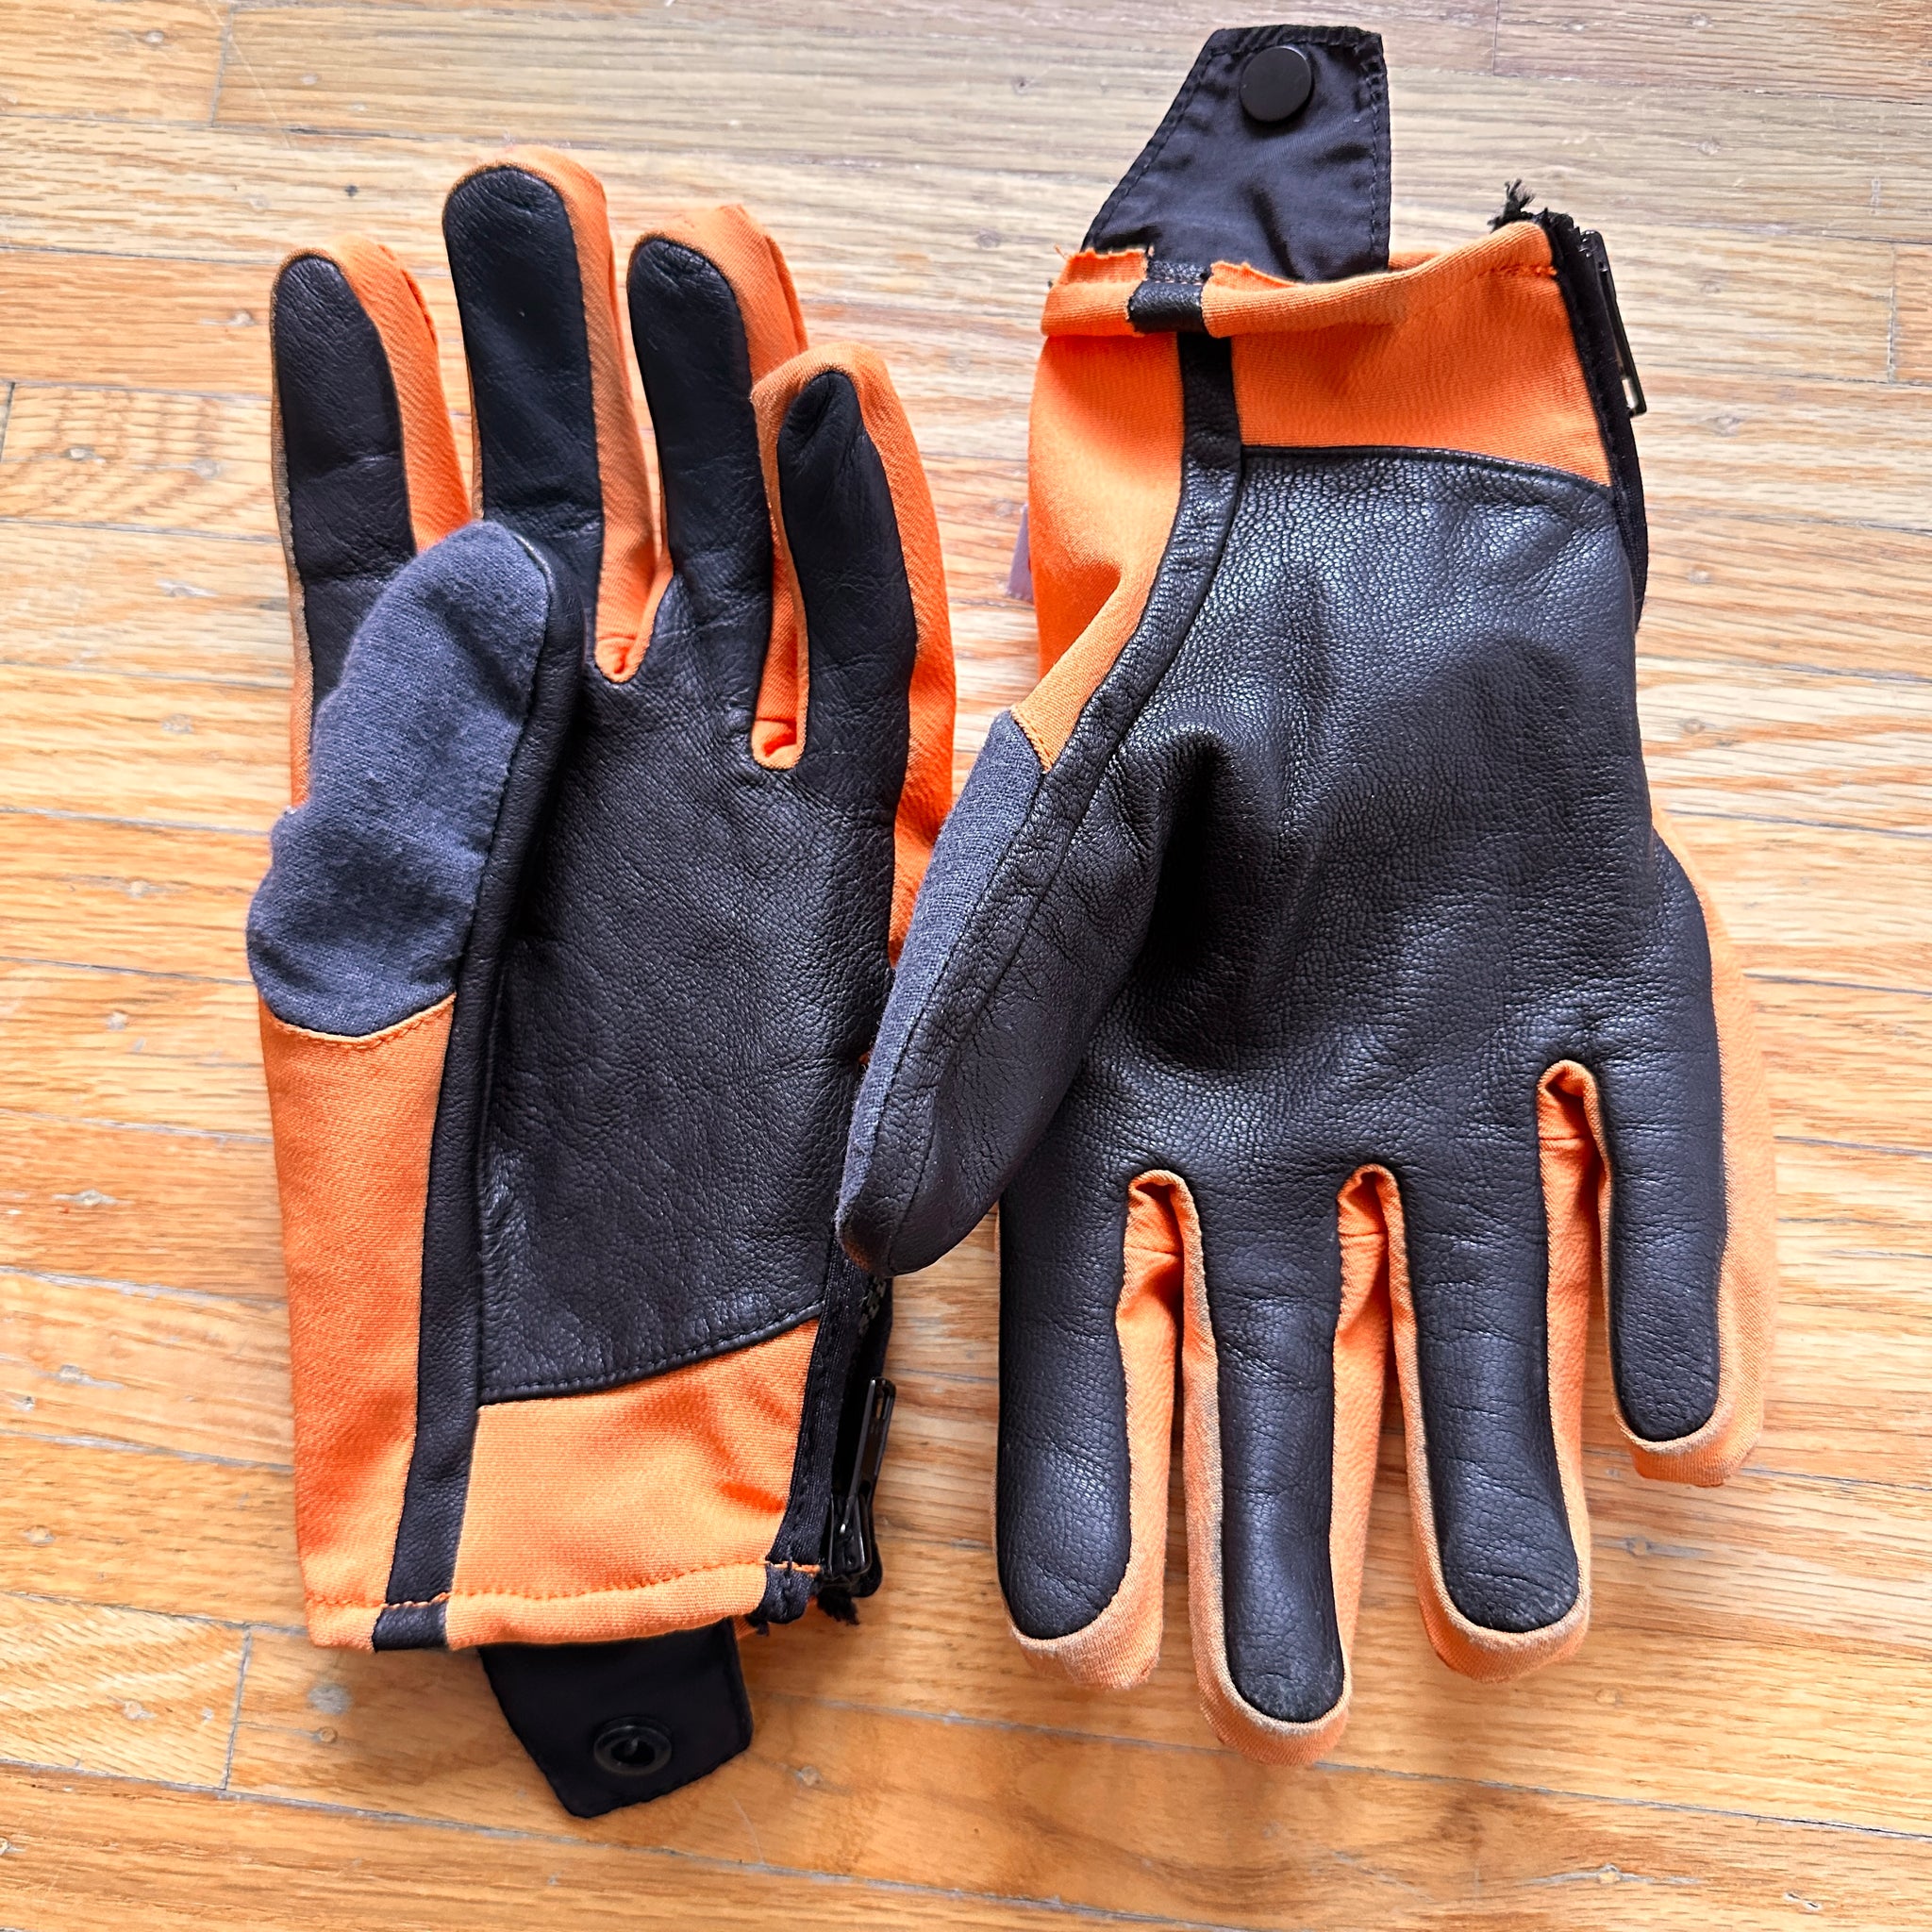 Burton AK gloves

M/L